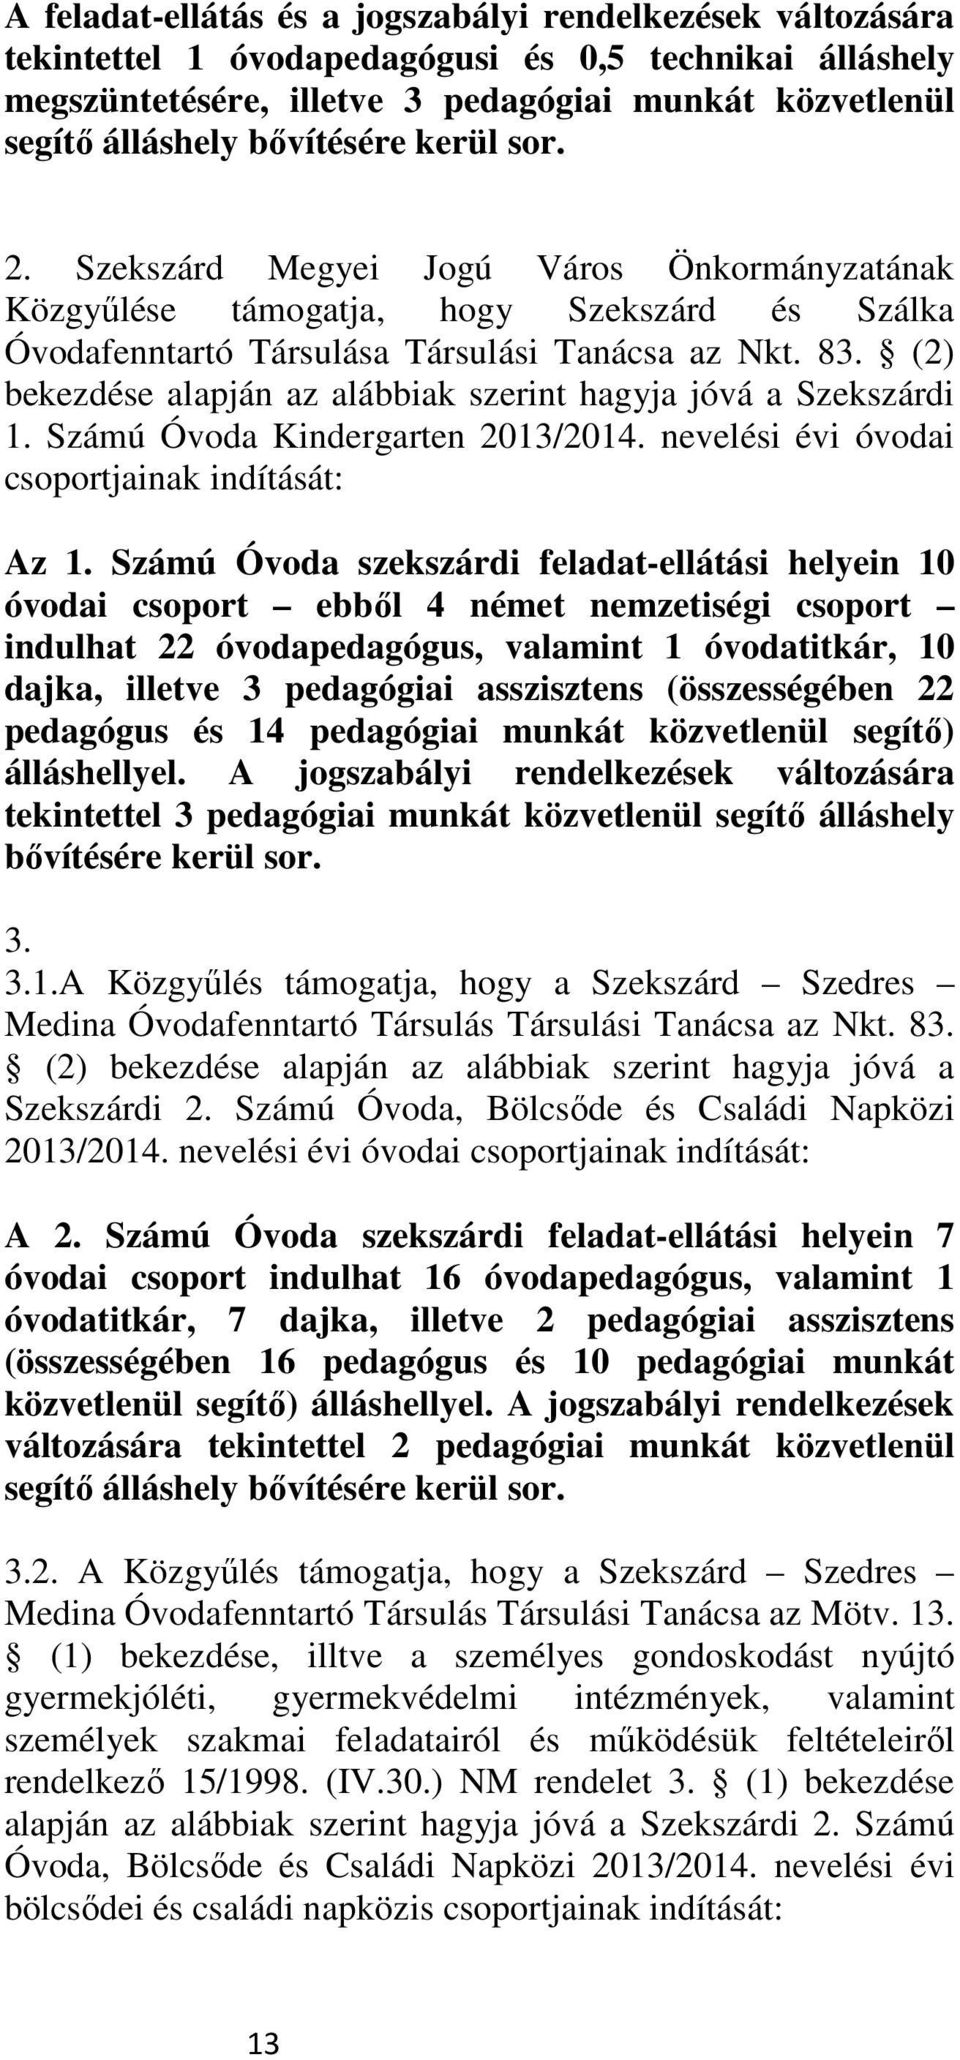 (2) bekezdése alapján az alábbiak szerint hagyja jóvá a Szekszárdi 1. Számú Óvoda Kindergarten 2013/2014. nevelési évi óvodai csoportjainak indítását: Az 1.